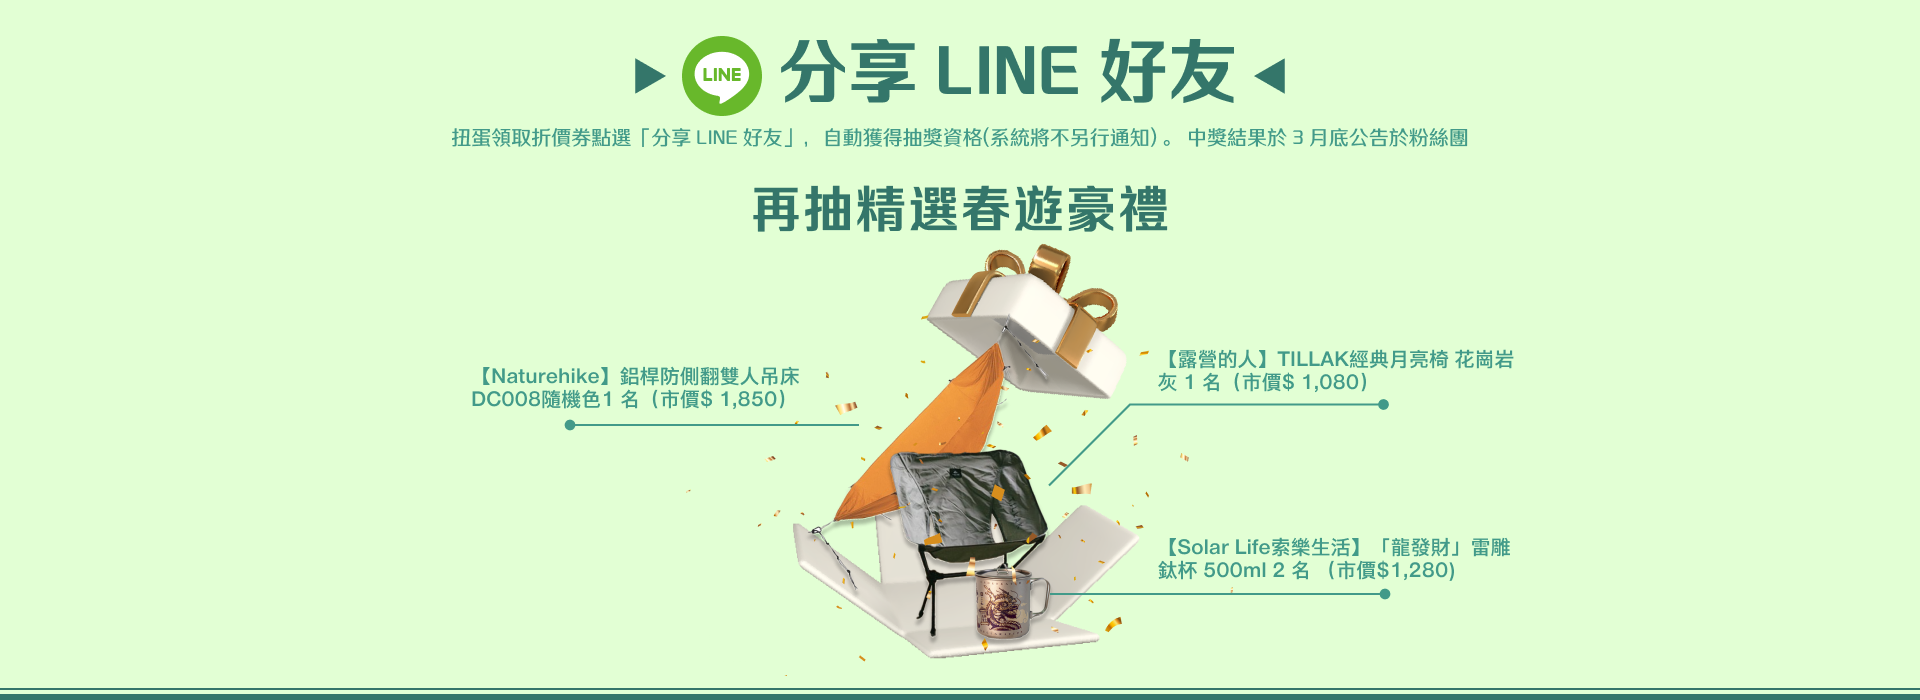 分享 LINE PC